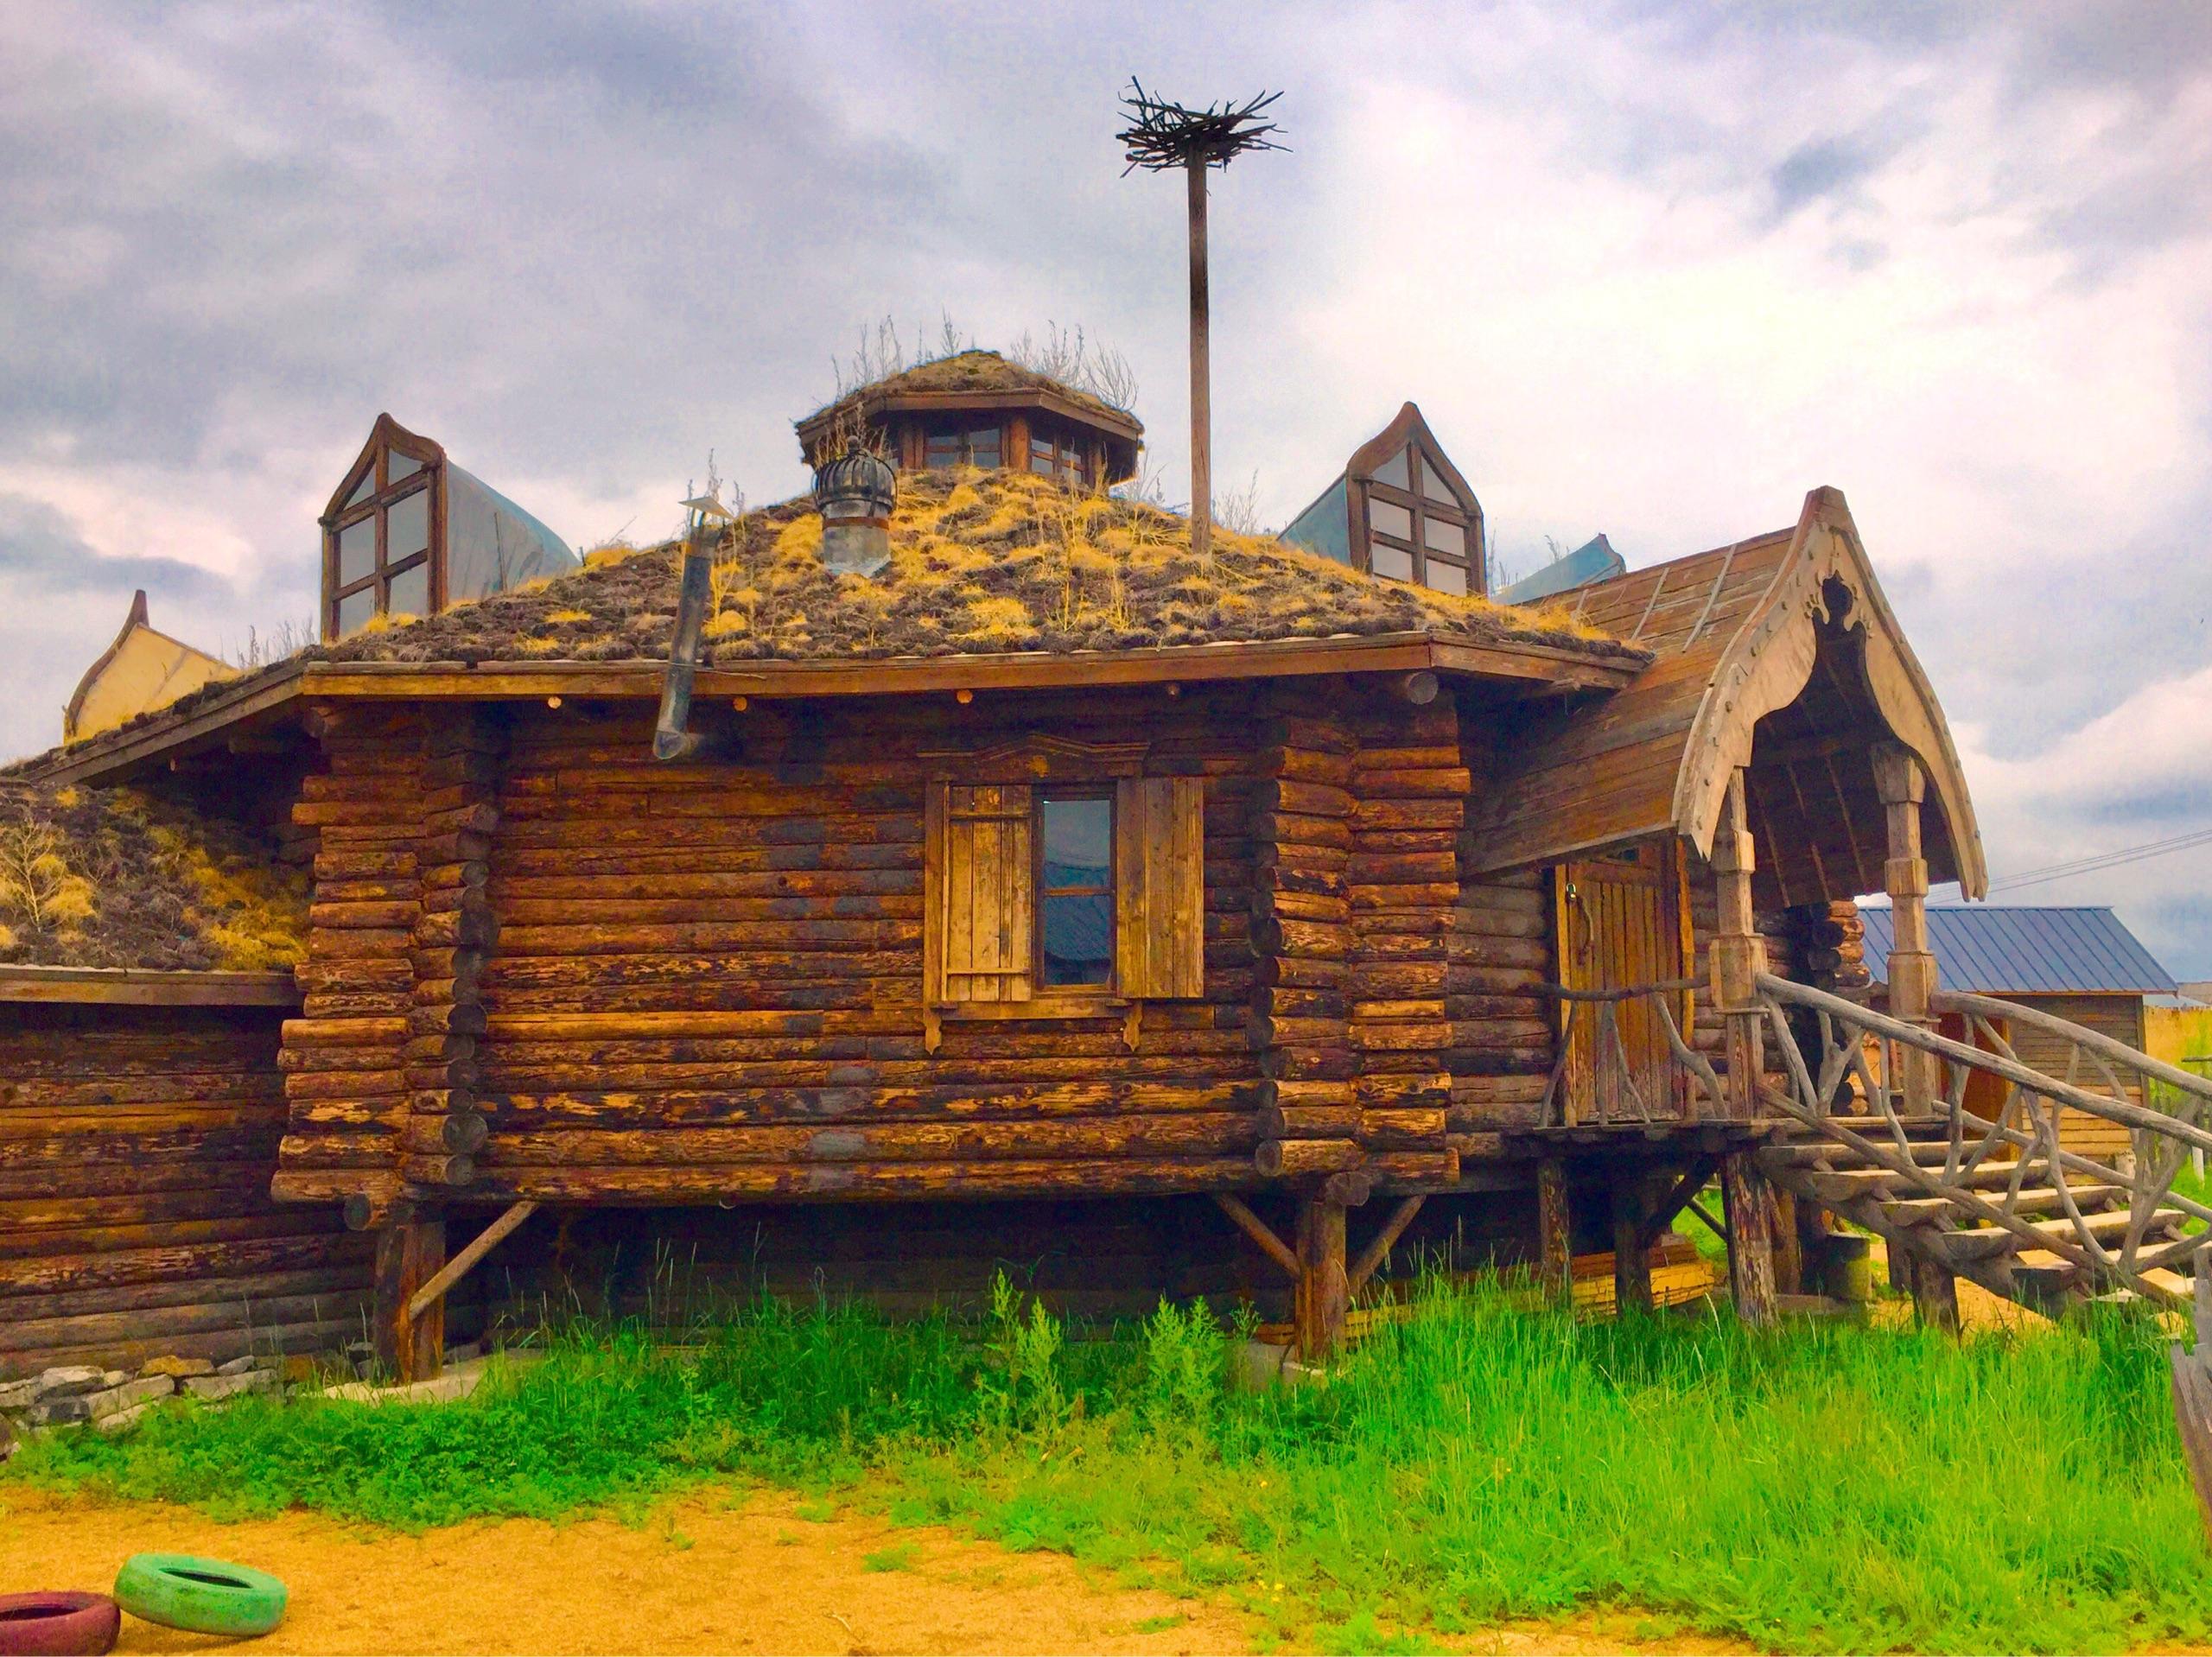 呼伦贝尔大草原恩和俄罗斯风情小镇典型的俄罗斯风情木屋别墅